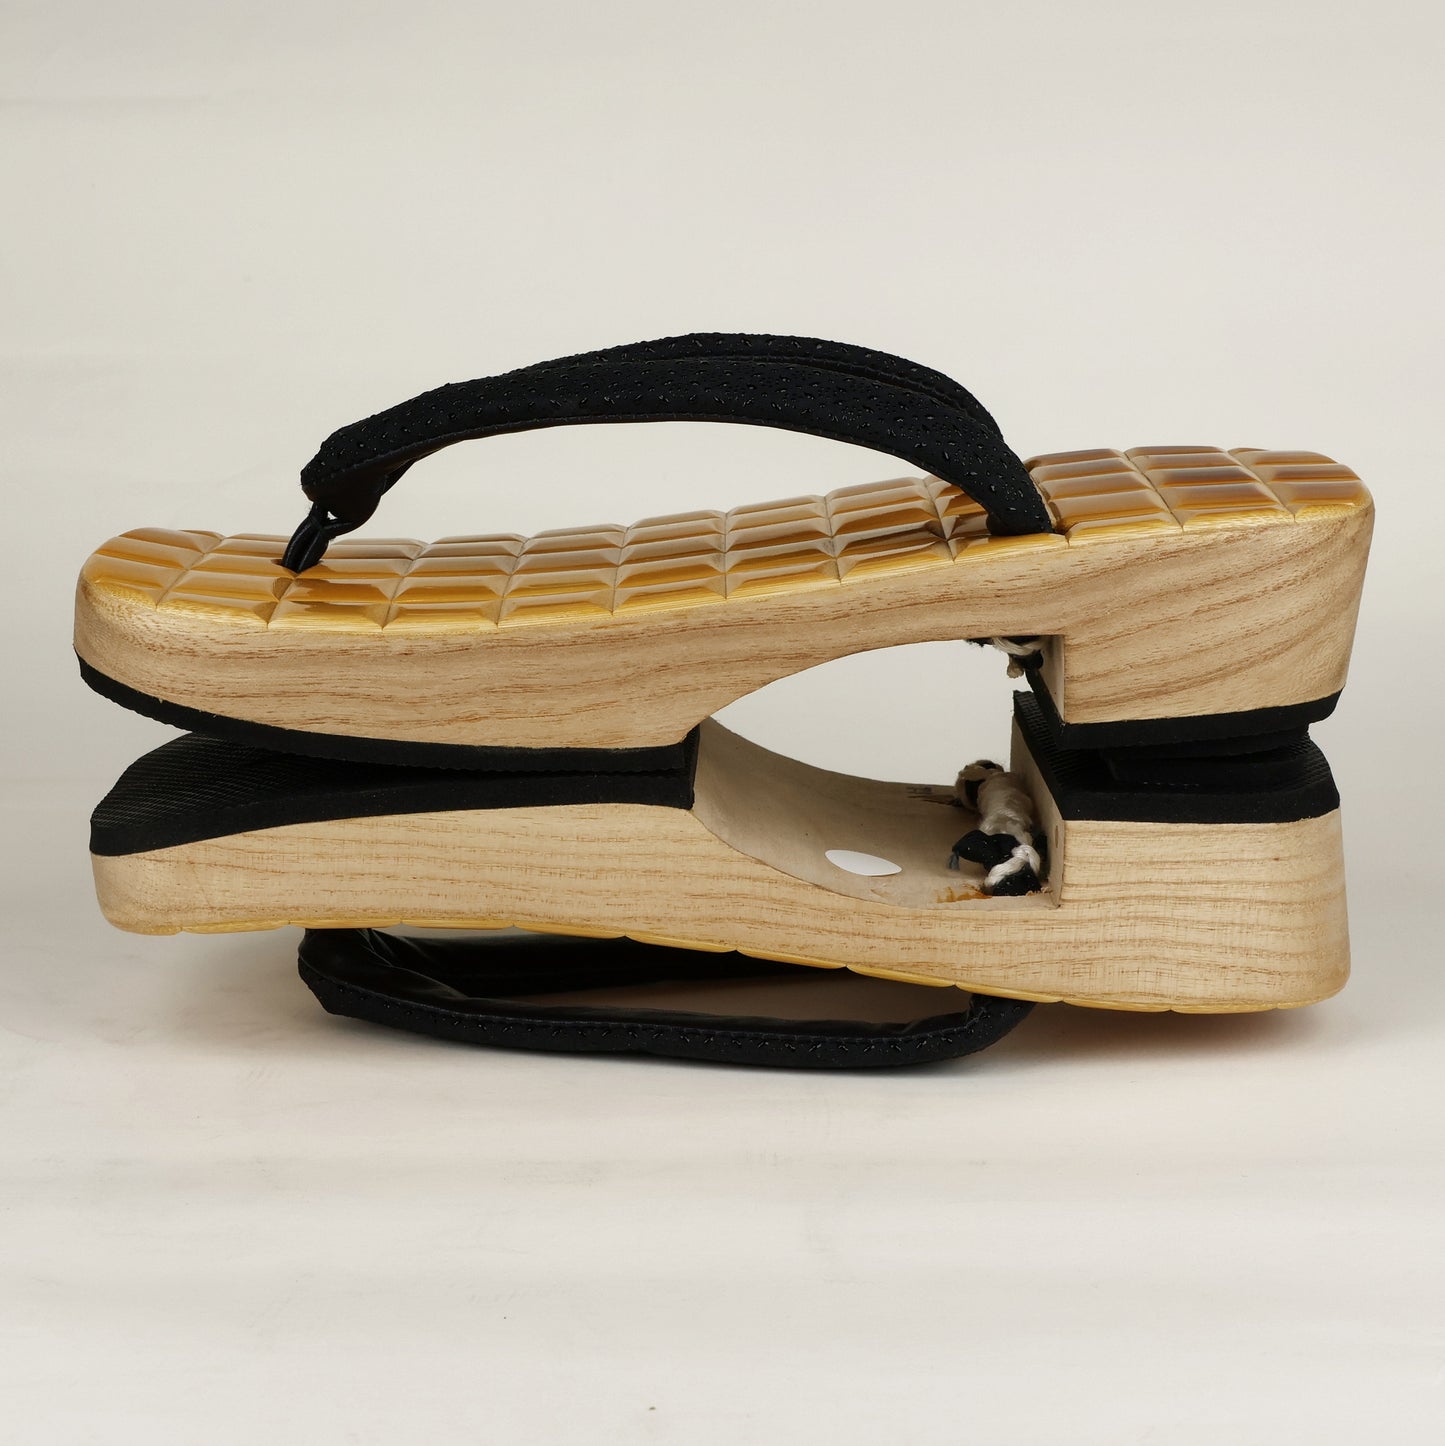 Japanese Geta Sandals, Japanese Geta, Japanese wooden clogs, Japanese wood sandals, Wooden Japaanese sandals, Ukon geta, Men's Ukon Geta, Free Shipping